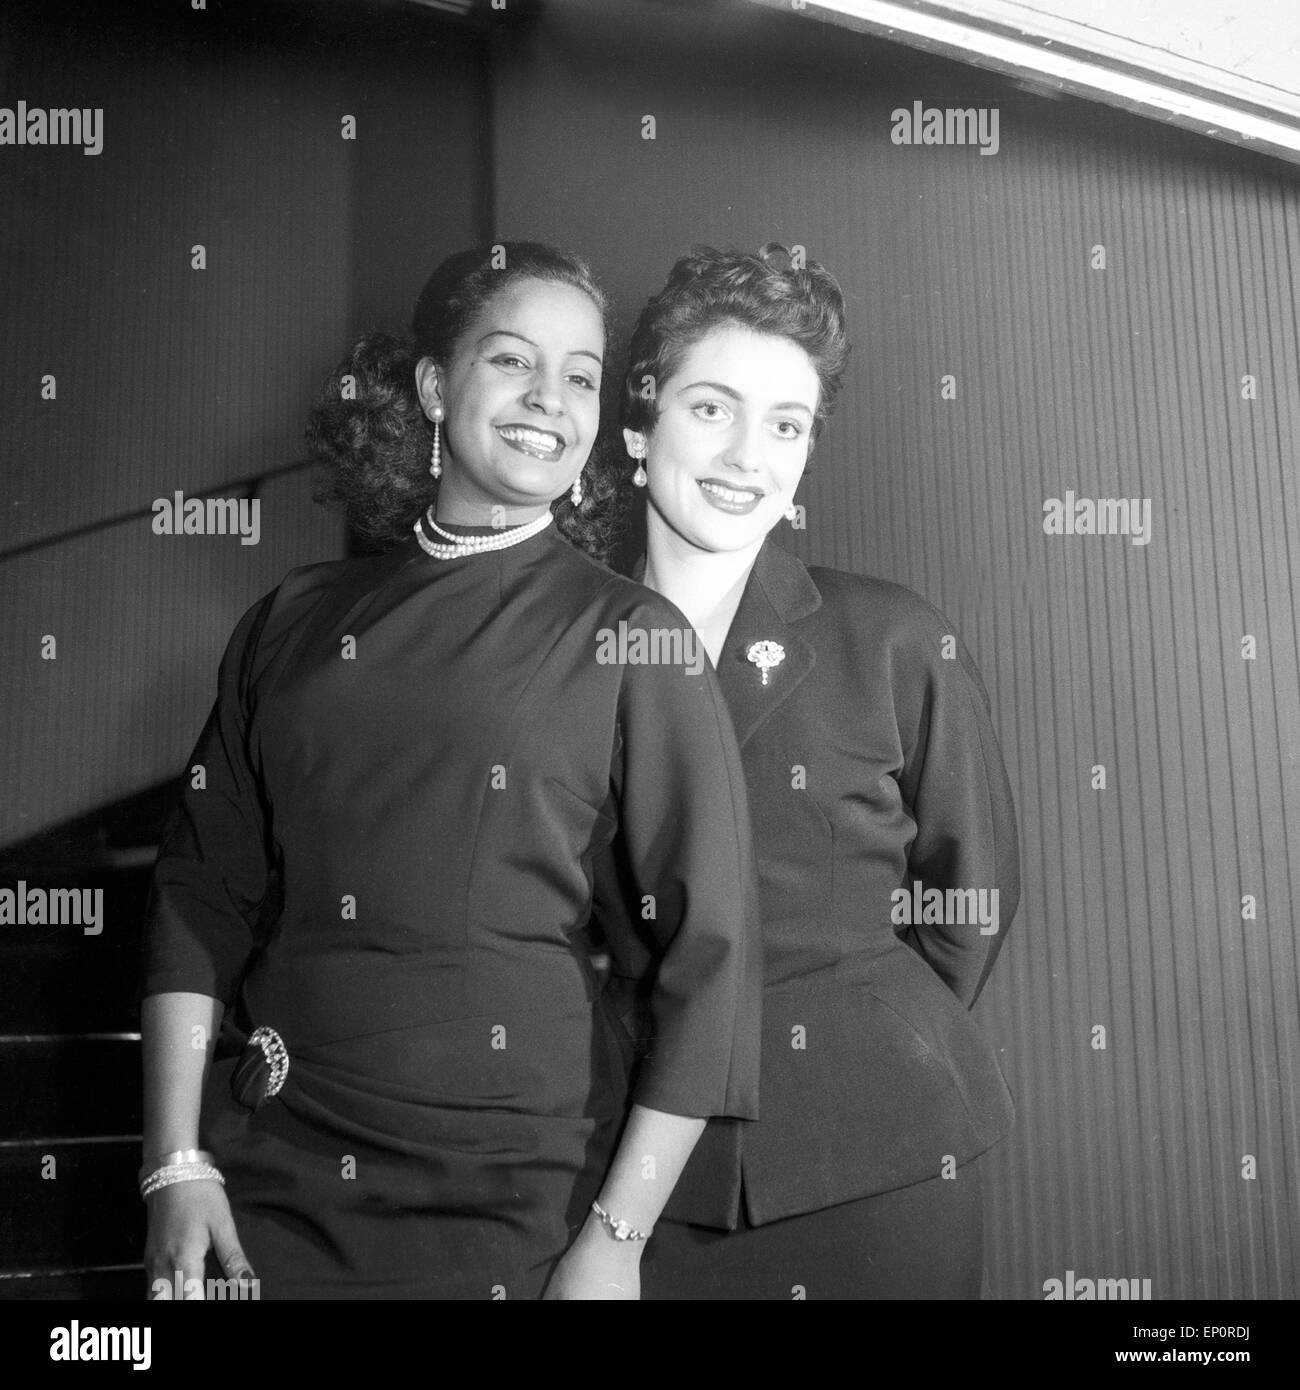 Blues Karibische-, Pop- und Schlagersängerin Mona Baptiste mit einer Freundin im GOP in Hannover herzlich begrüßt, Hannover Foto Stock